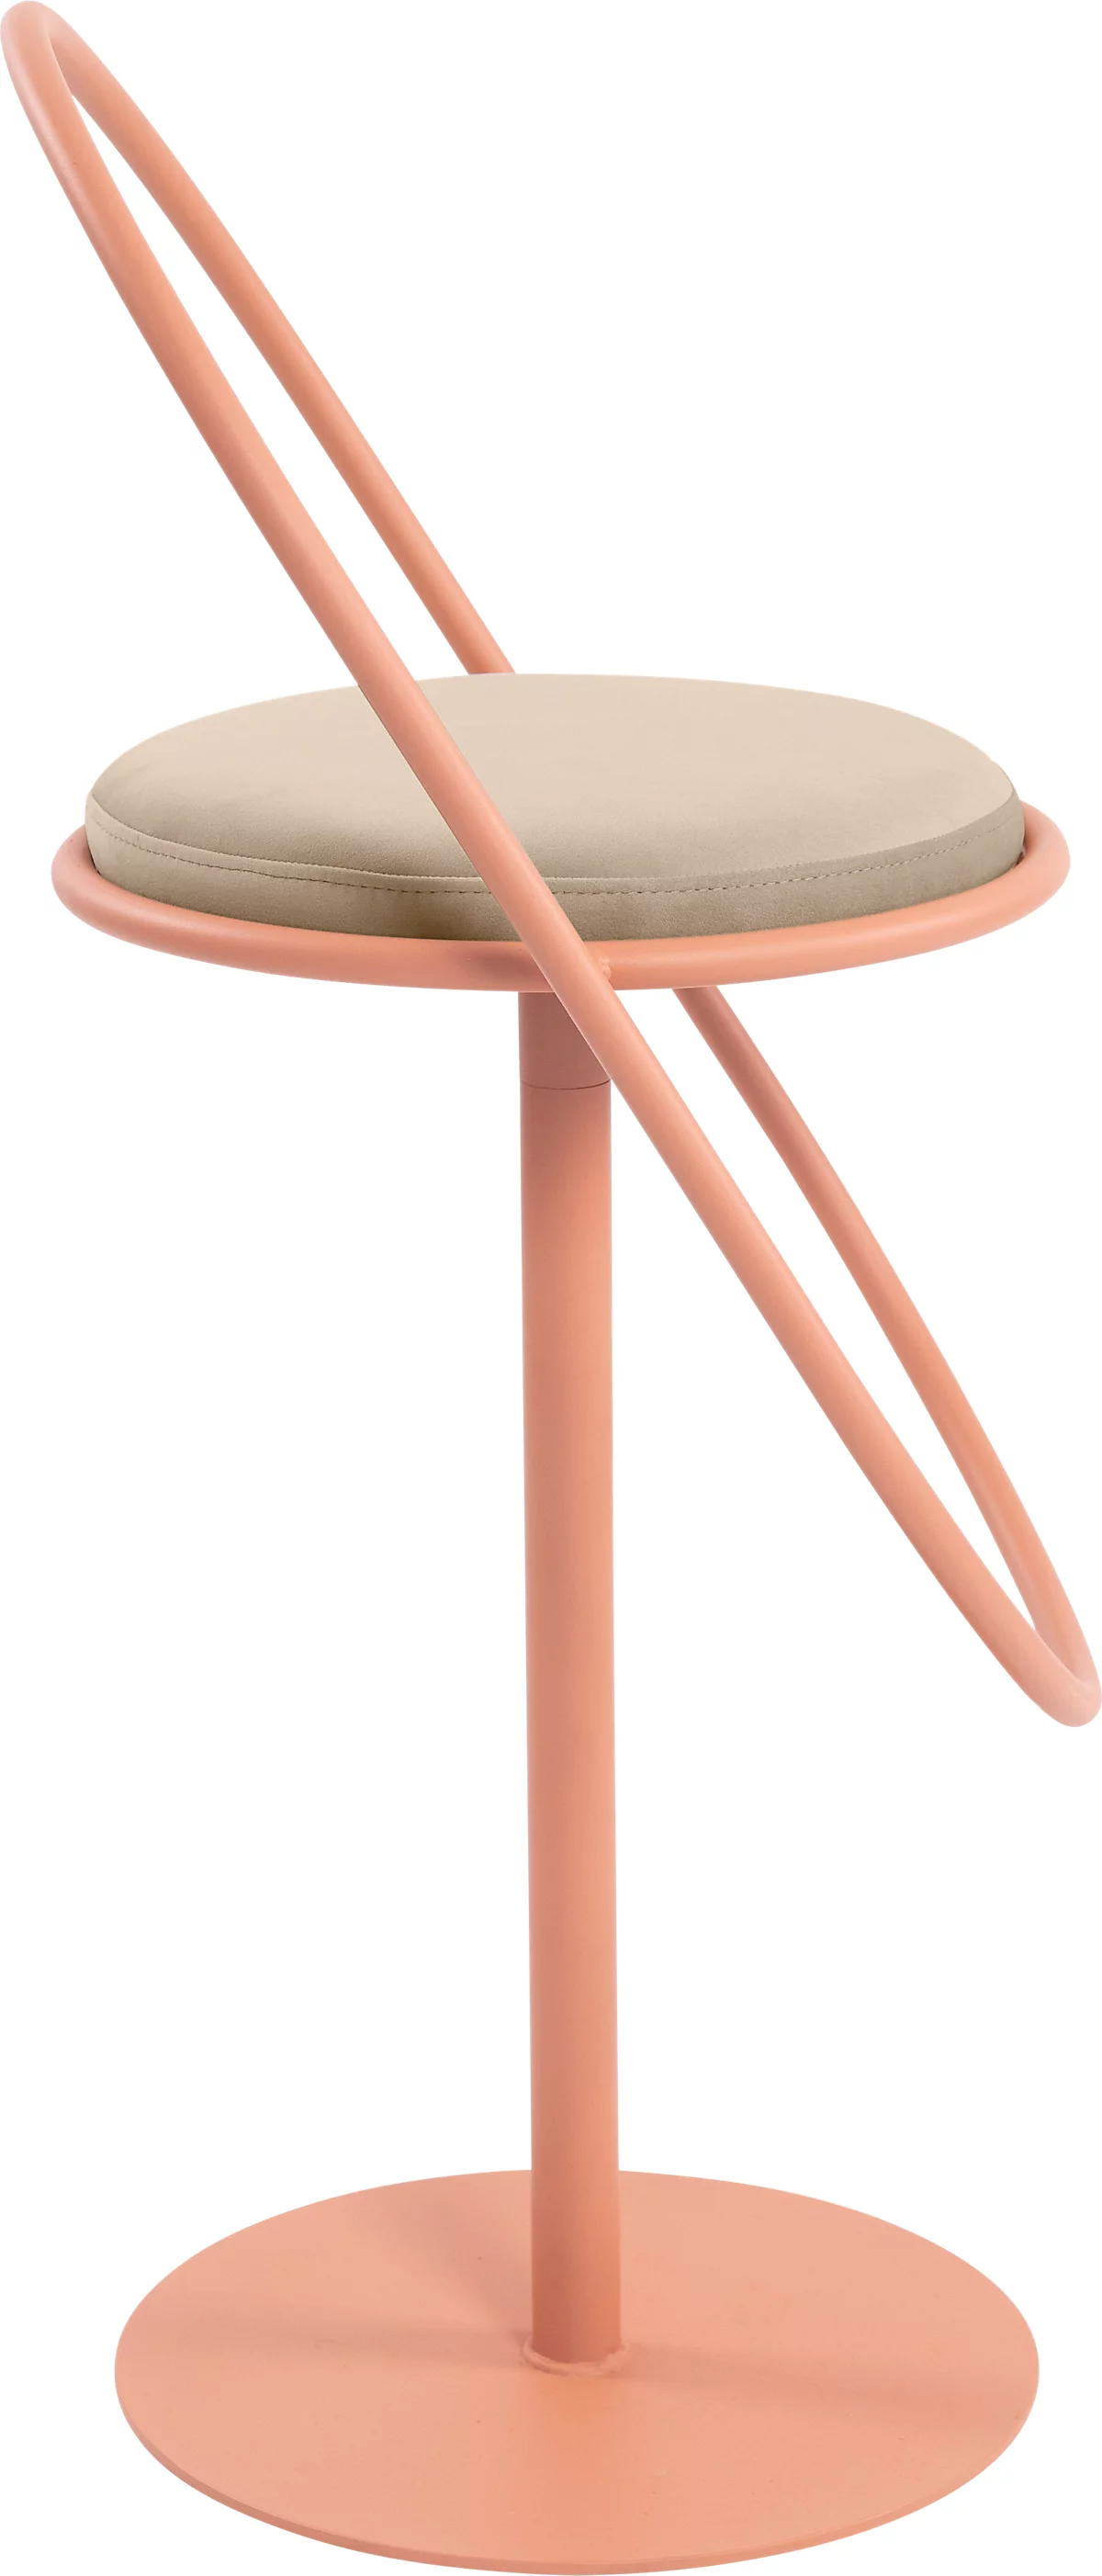 Barhocker Paperflow Saturne, mit Rückenlehne, Sitzhöhe 765 mm, gepolstert, zu 100 % recycelbar, Samtbezug elfenbeinfarben, Gestell rosa